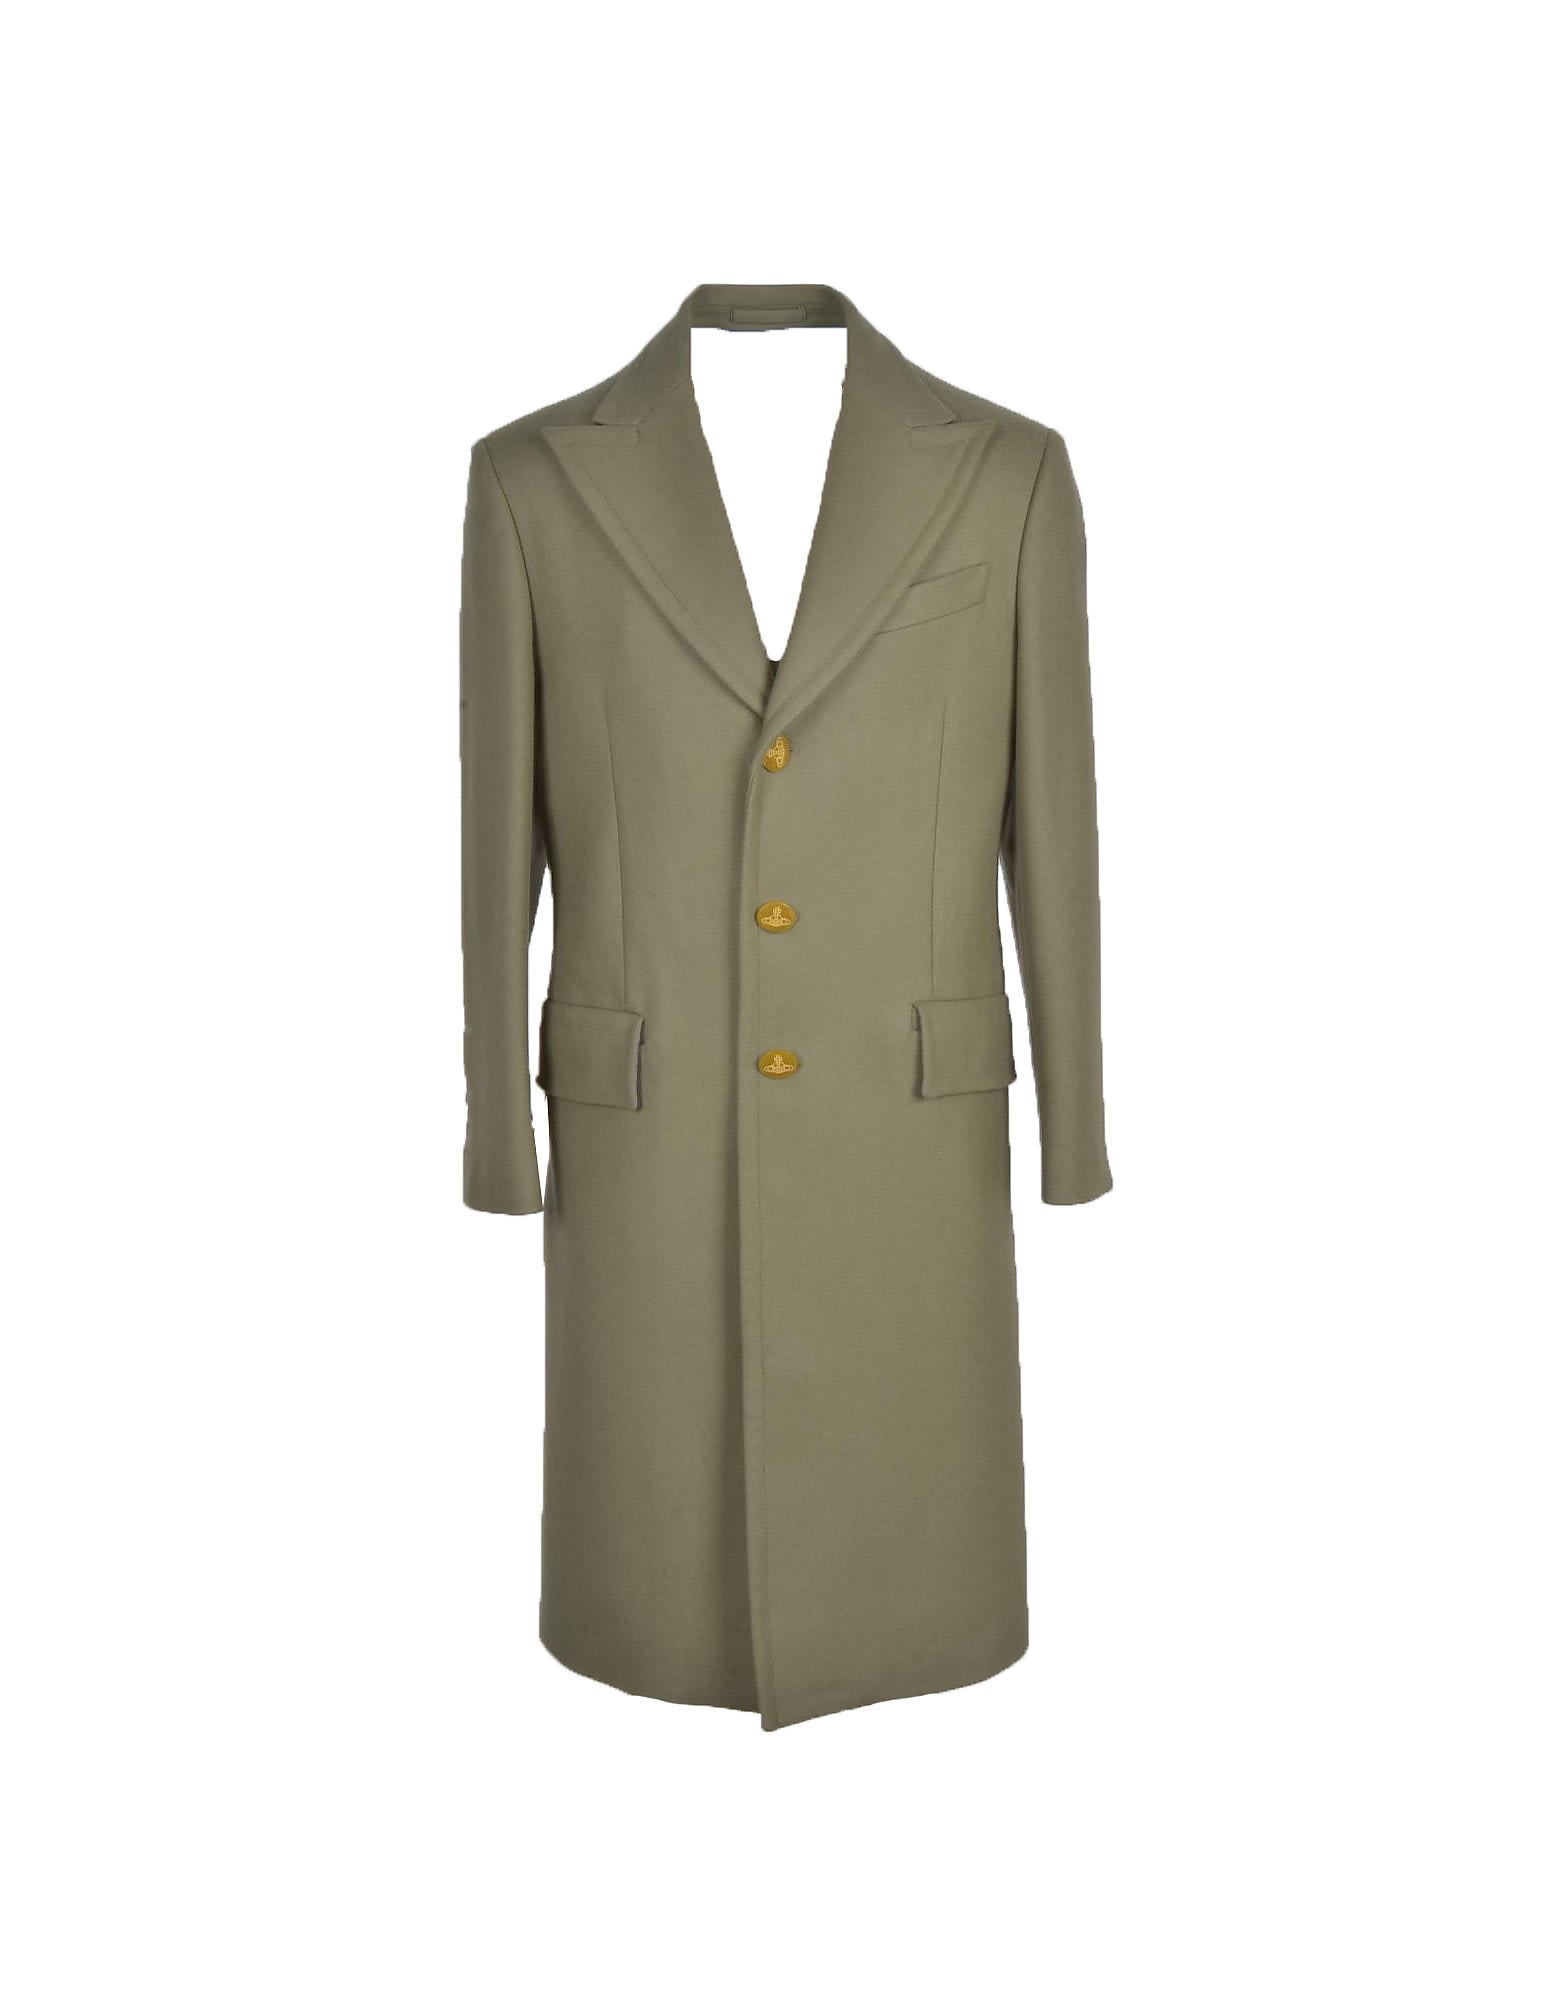 Vivienne Westwood Mens Green Coat